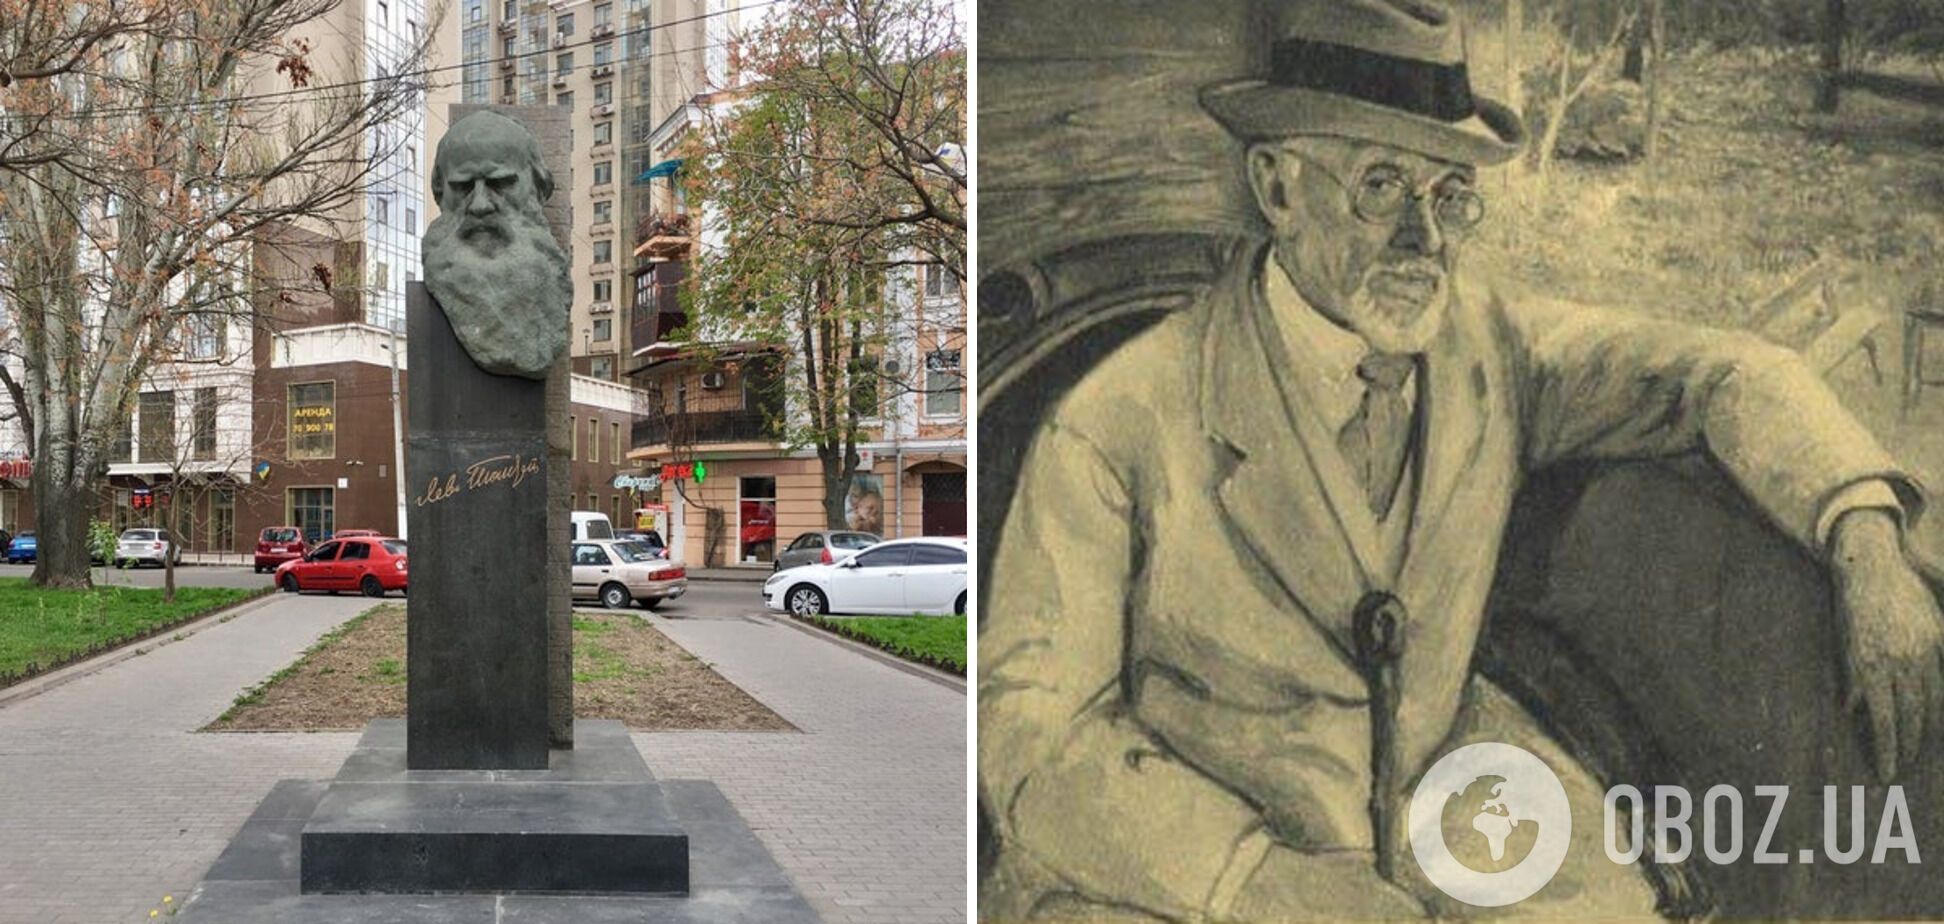  В Одесі хочуть назвати вулицю на честь Менделя Мойхер-Сфоріма: чому не всім це подобається